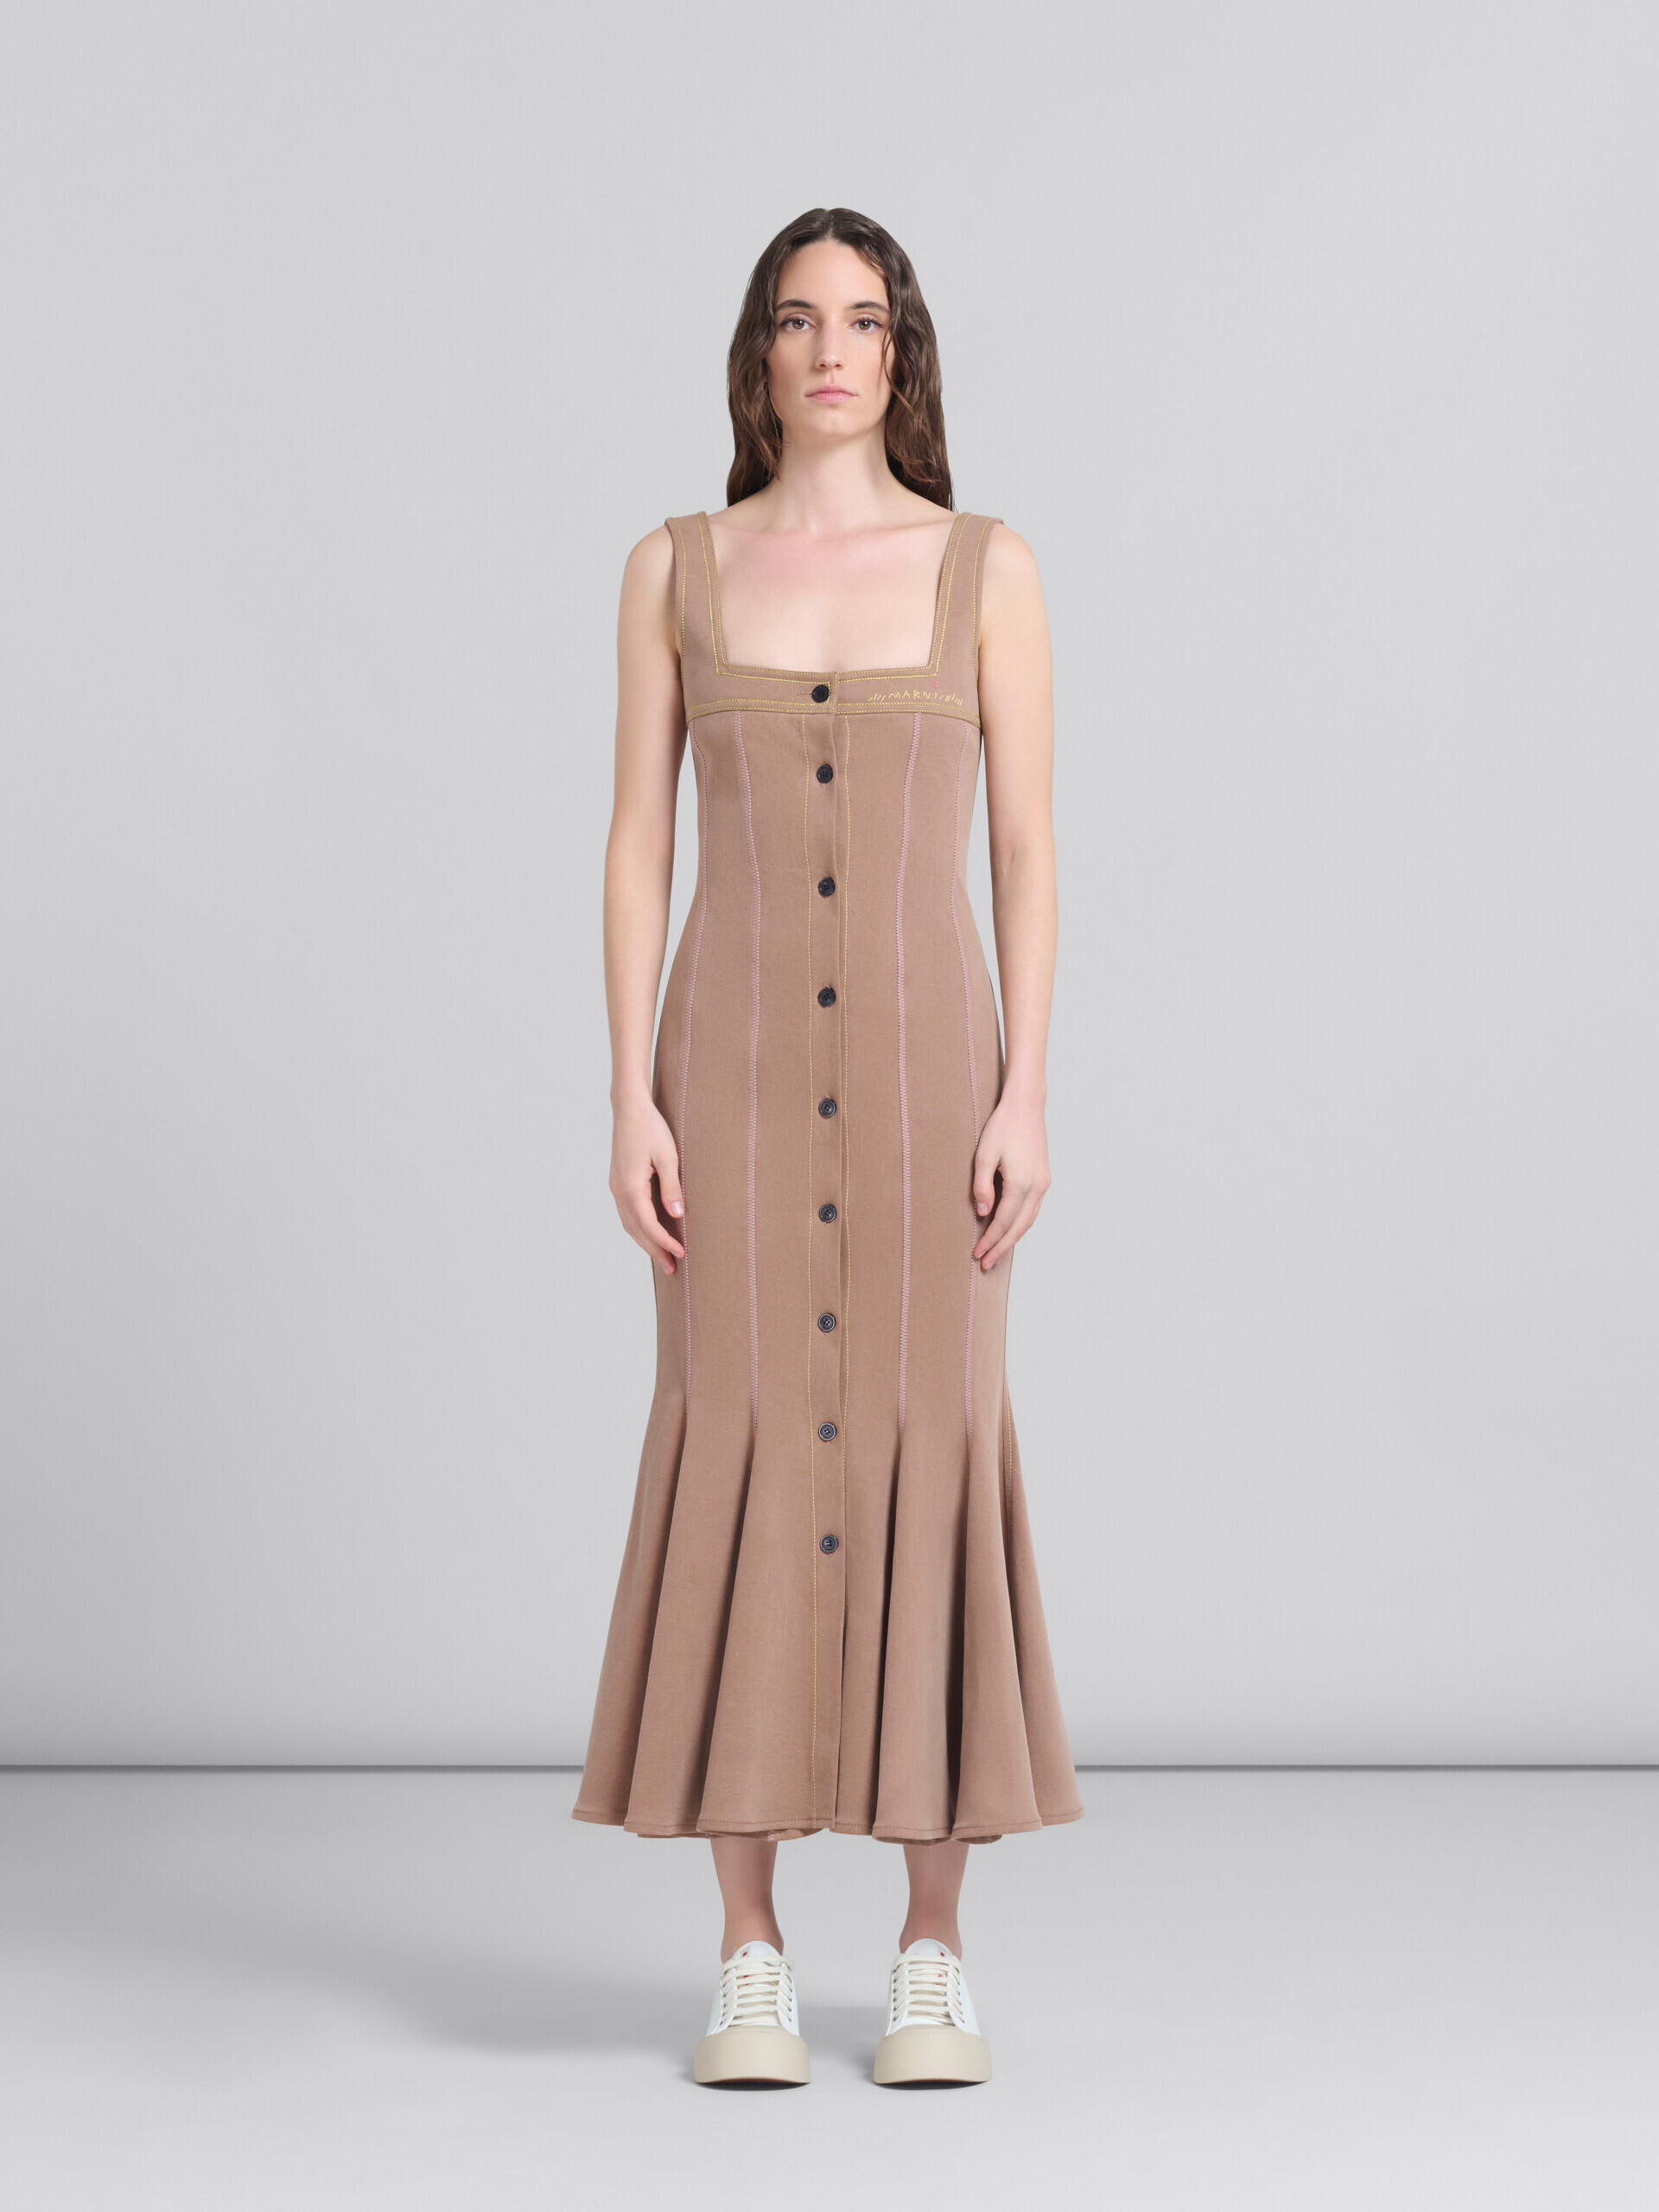 Vestido de tejido vaquero orgánico marrón con costuras en contraste - Vestidos - Image 1